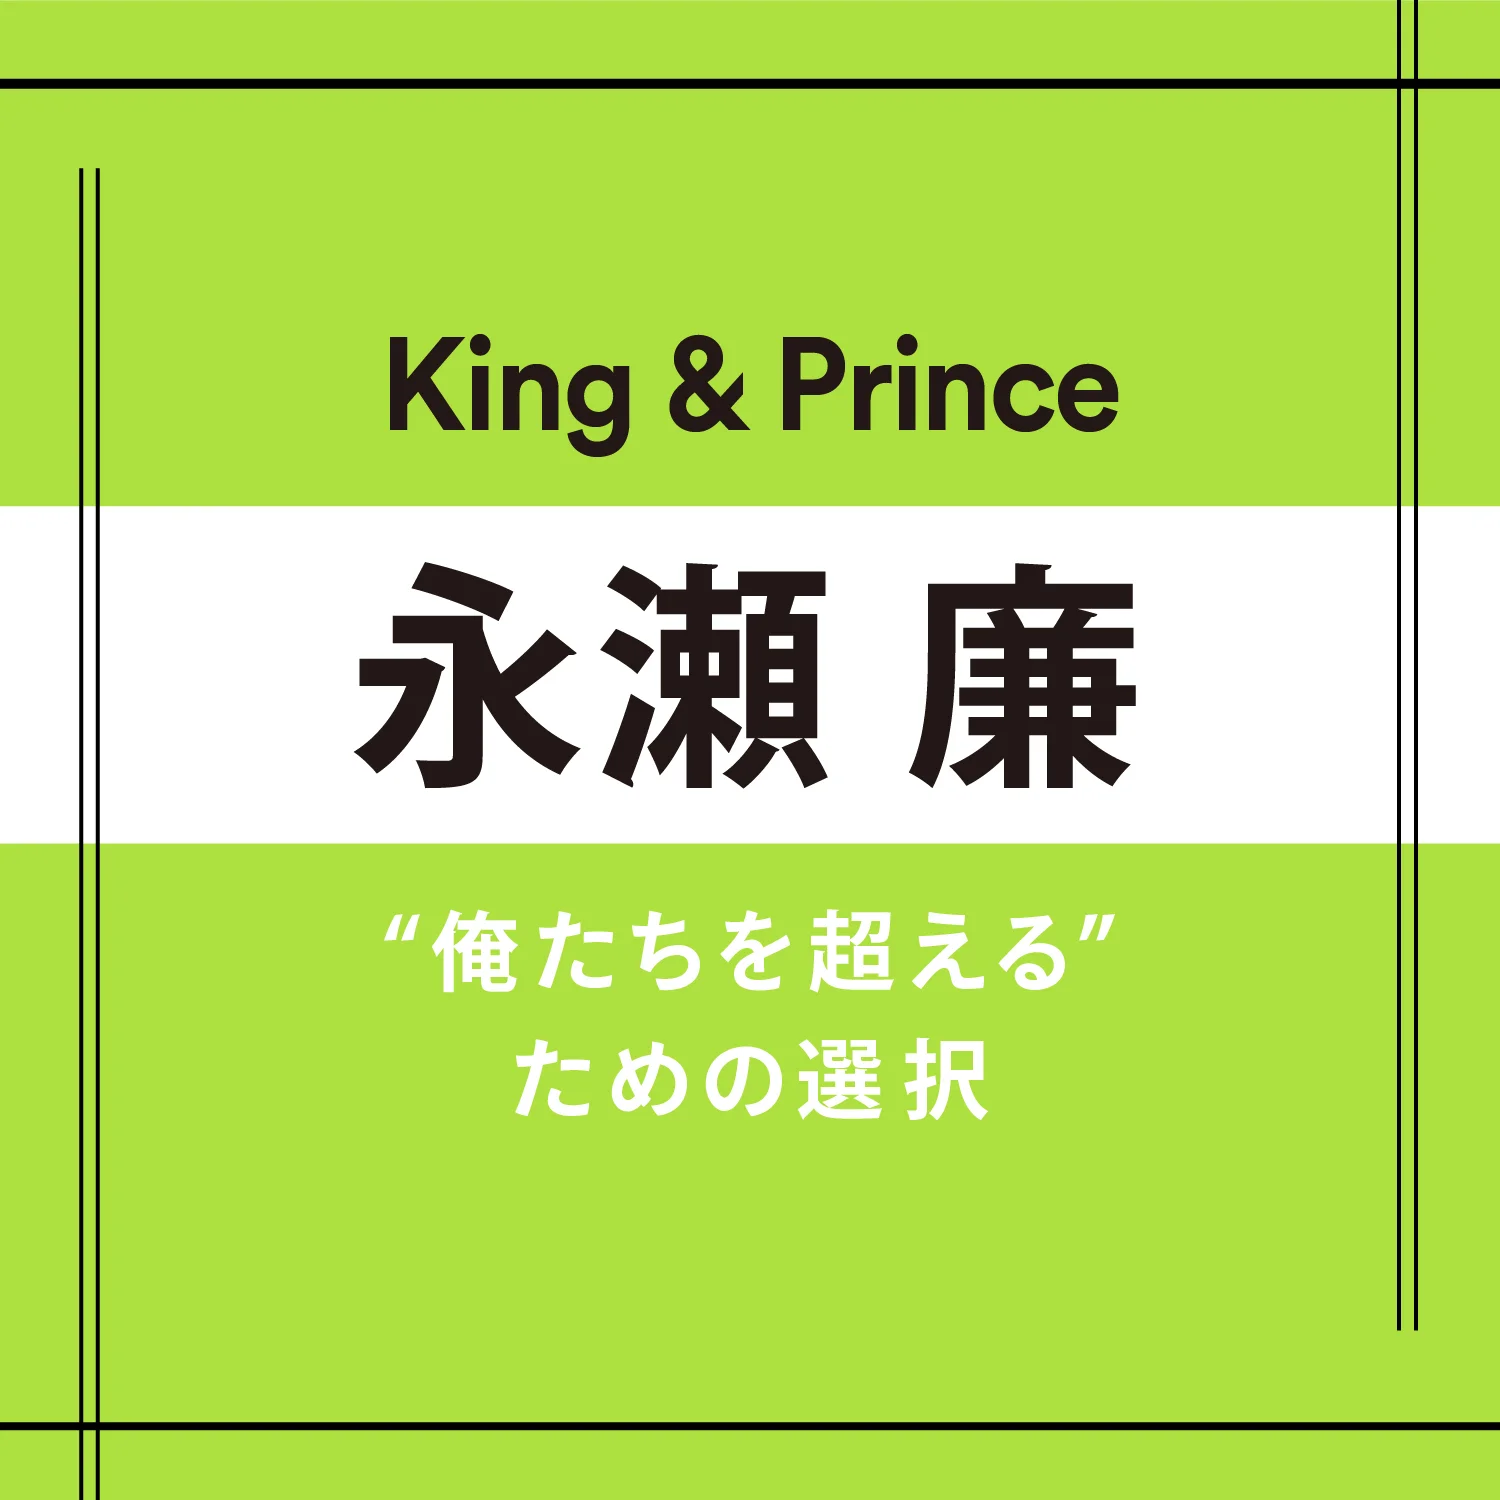 【King &amp; Prince】永瀬 廉さん「ときに流れに乗ることも大事だと思っています」 